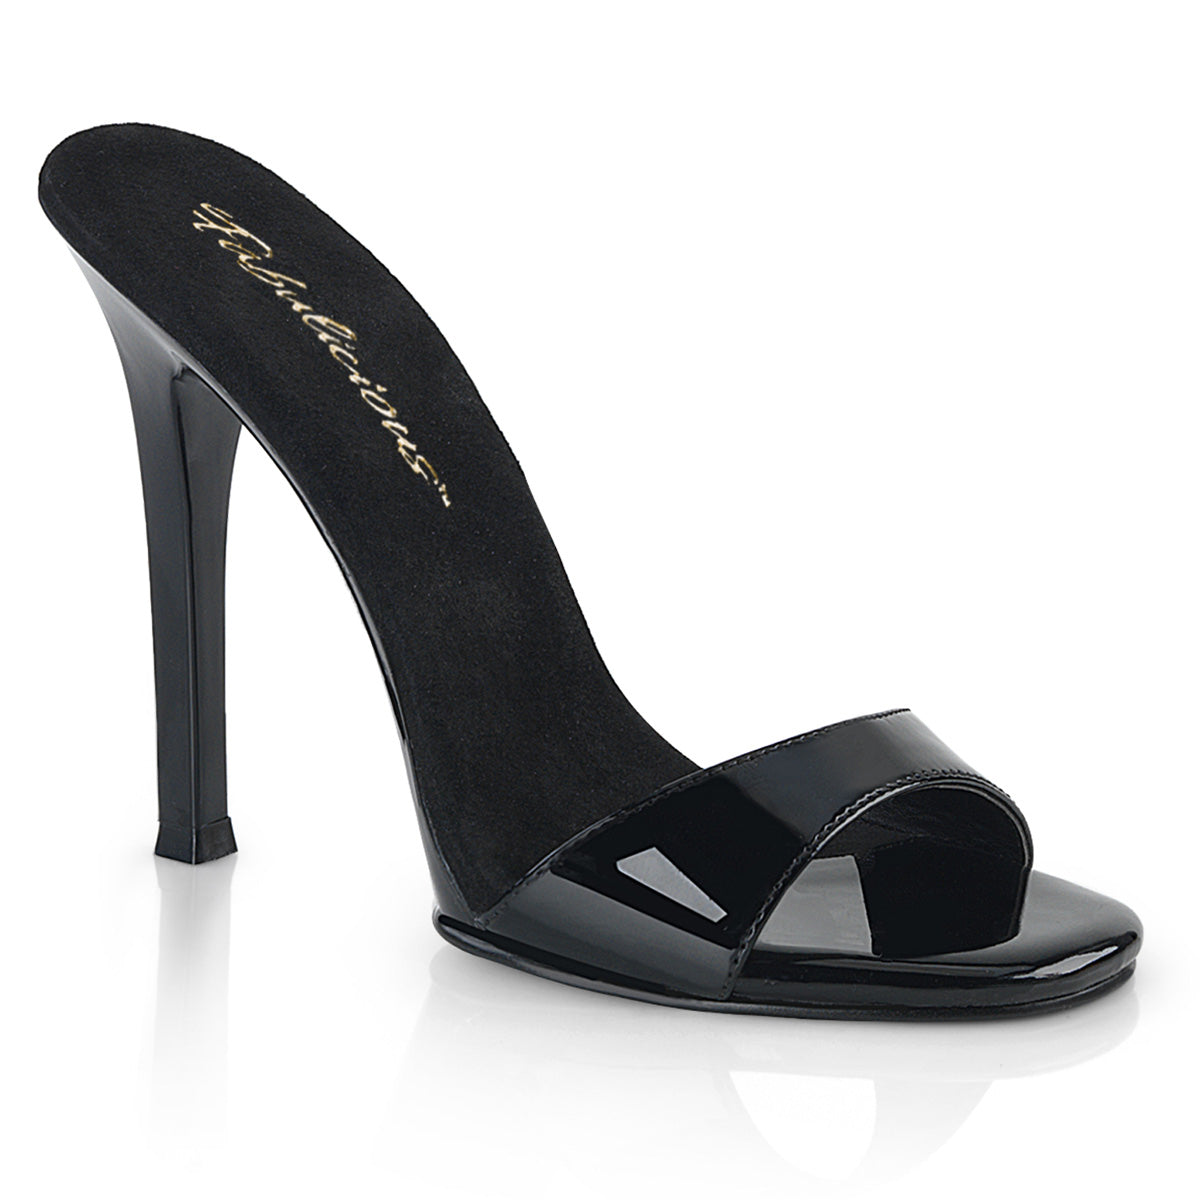 Gala-01S Fabulicious 4,5-дюймовый каблук черный патент сексуальная обувь